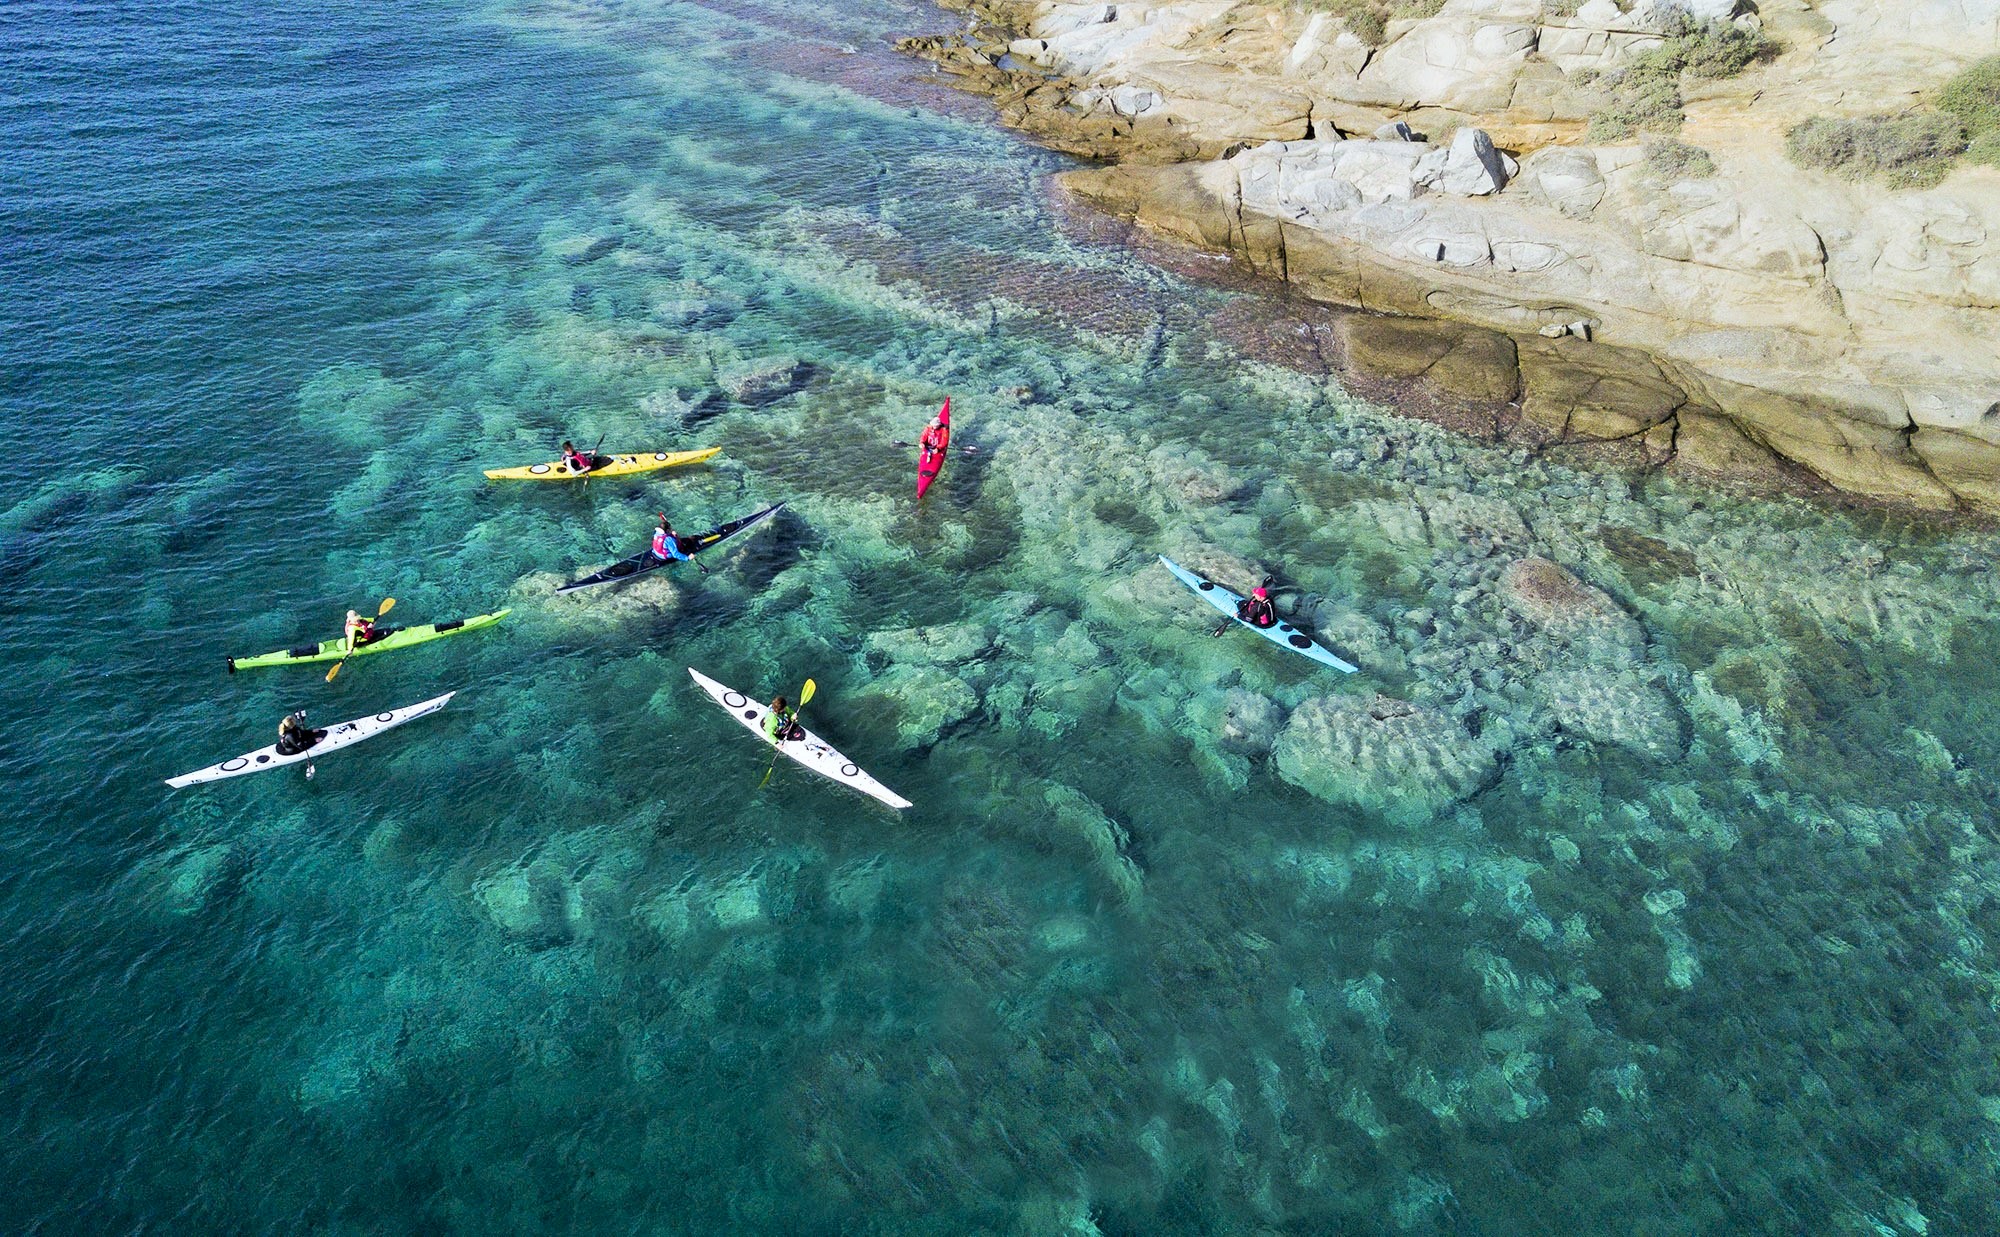 Νaxos Sea Kayak Symposium: Ταξίδι και εξερεύνηση στην πανέμορφη ακτογραμμή της Ελλάδας